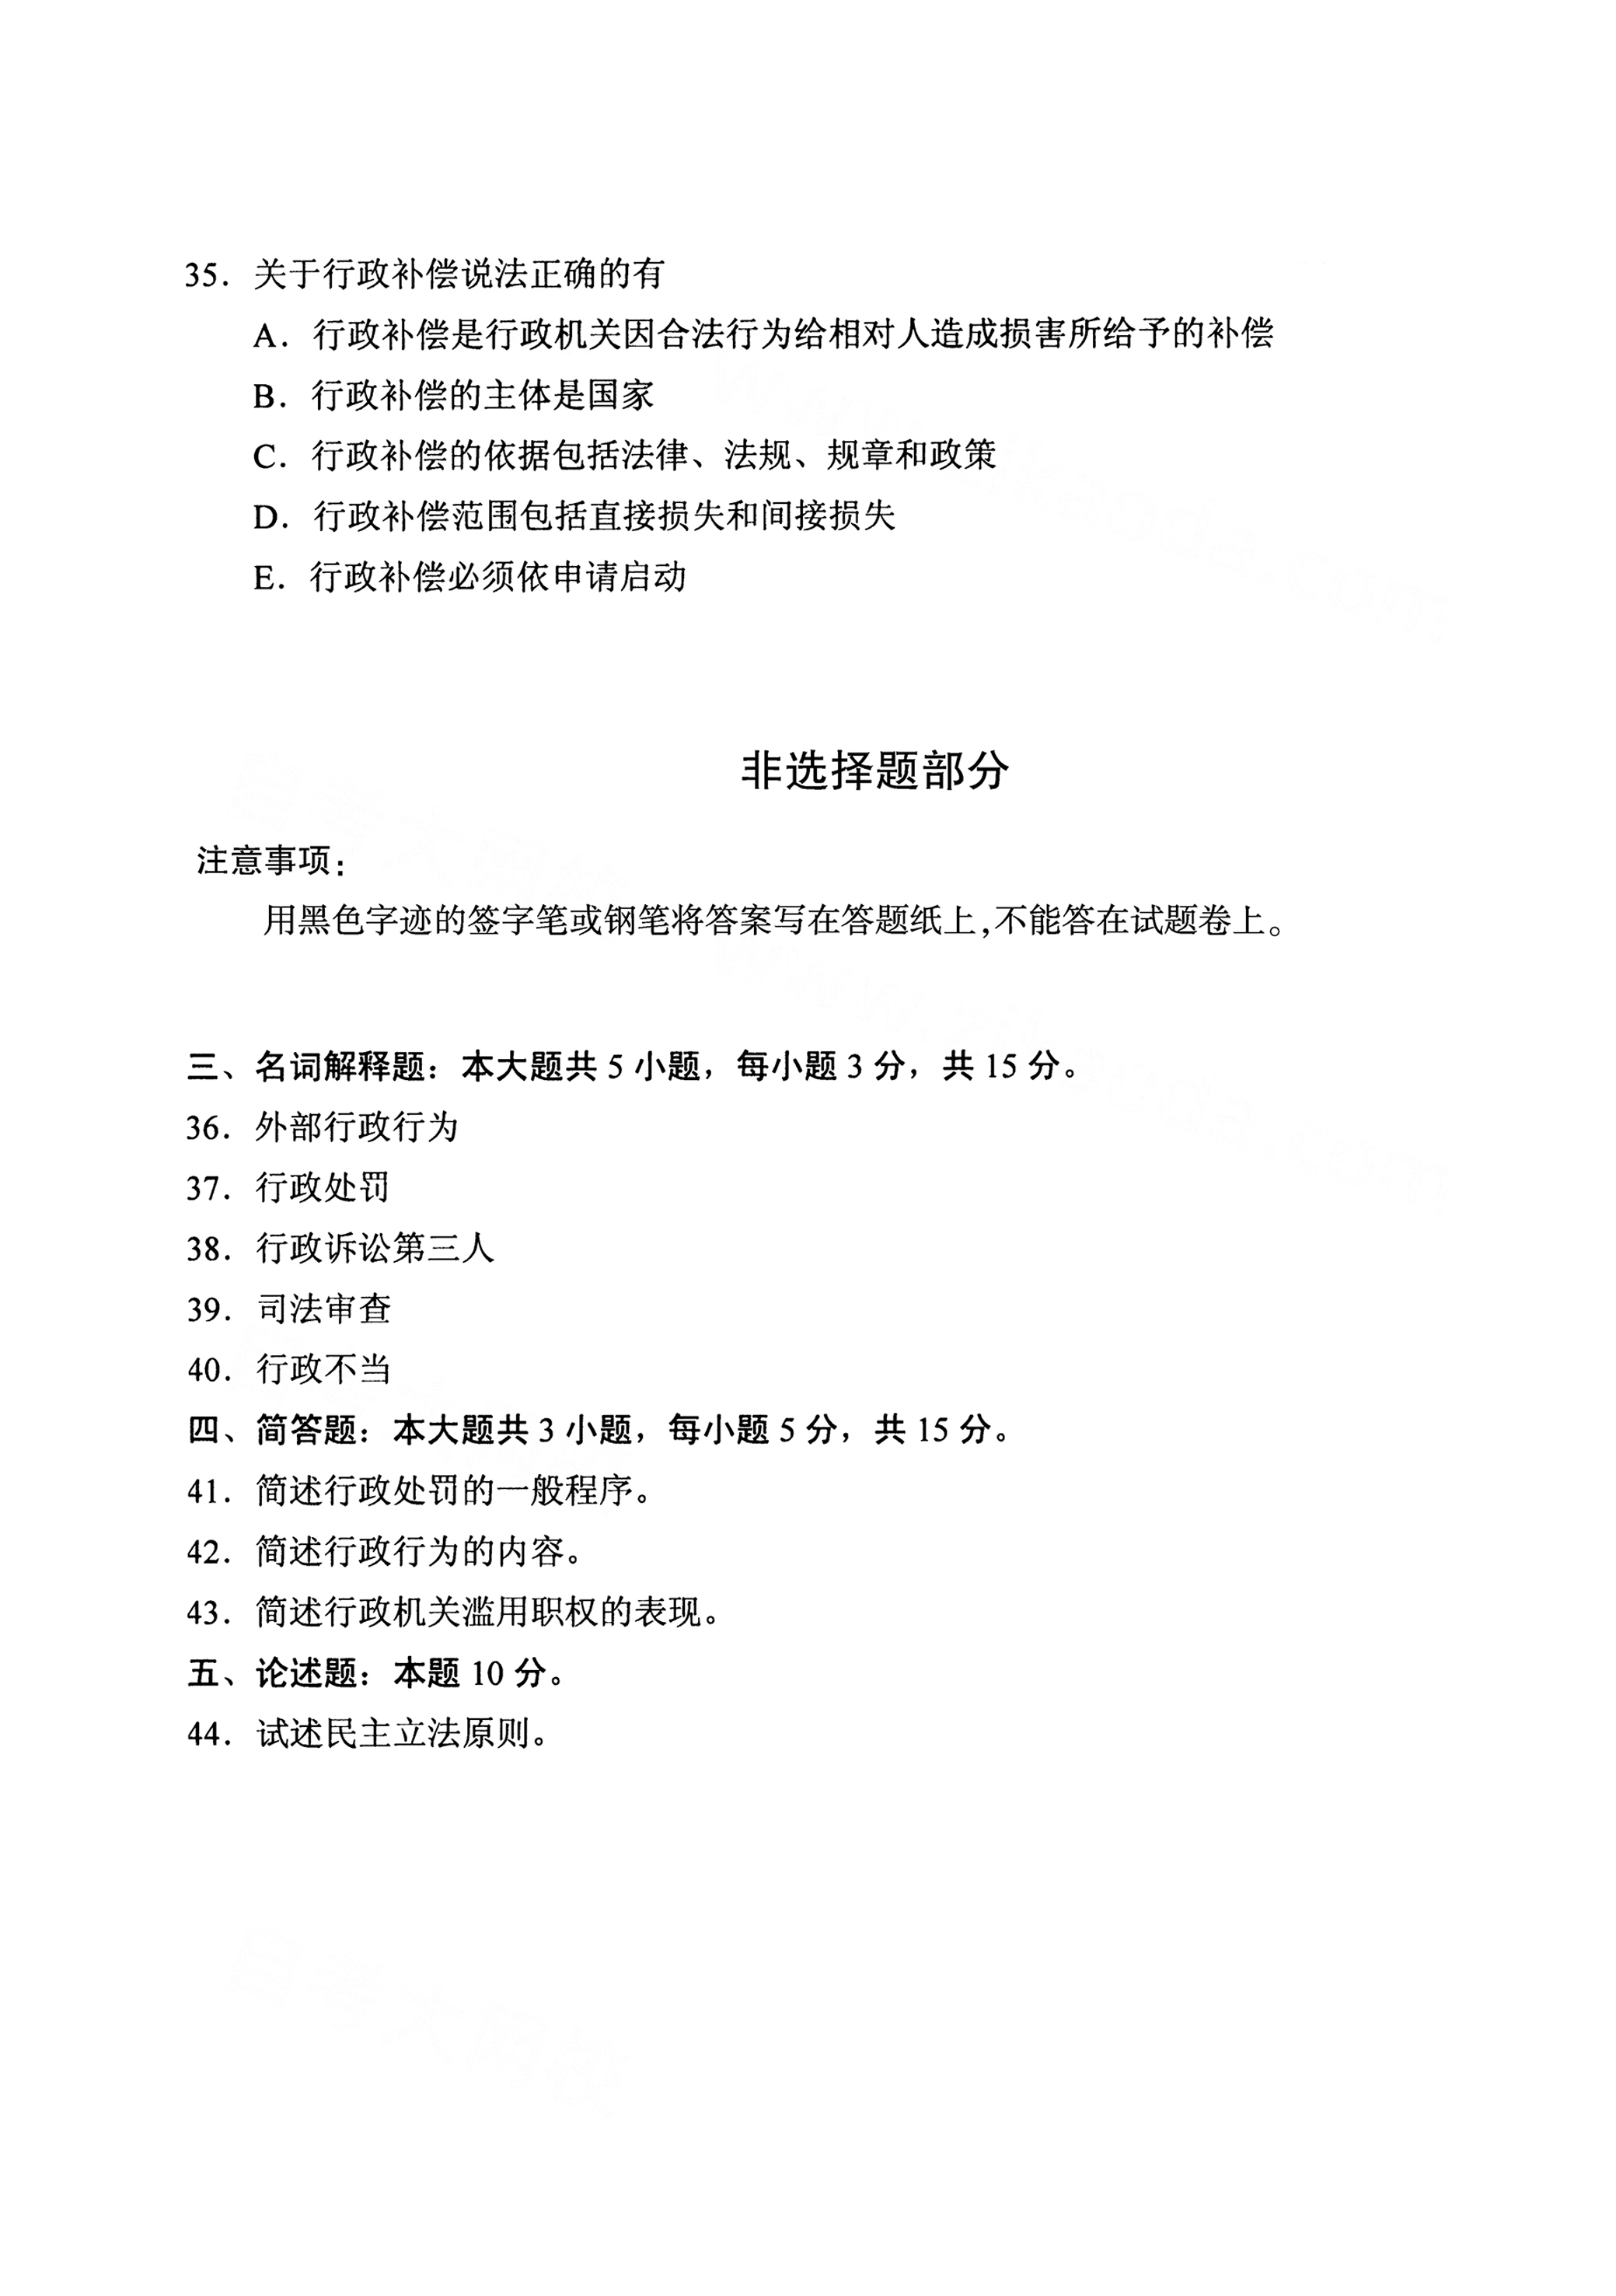 重庆自考国2021年4月自考00261行政法学真题试卷